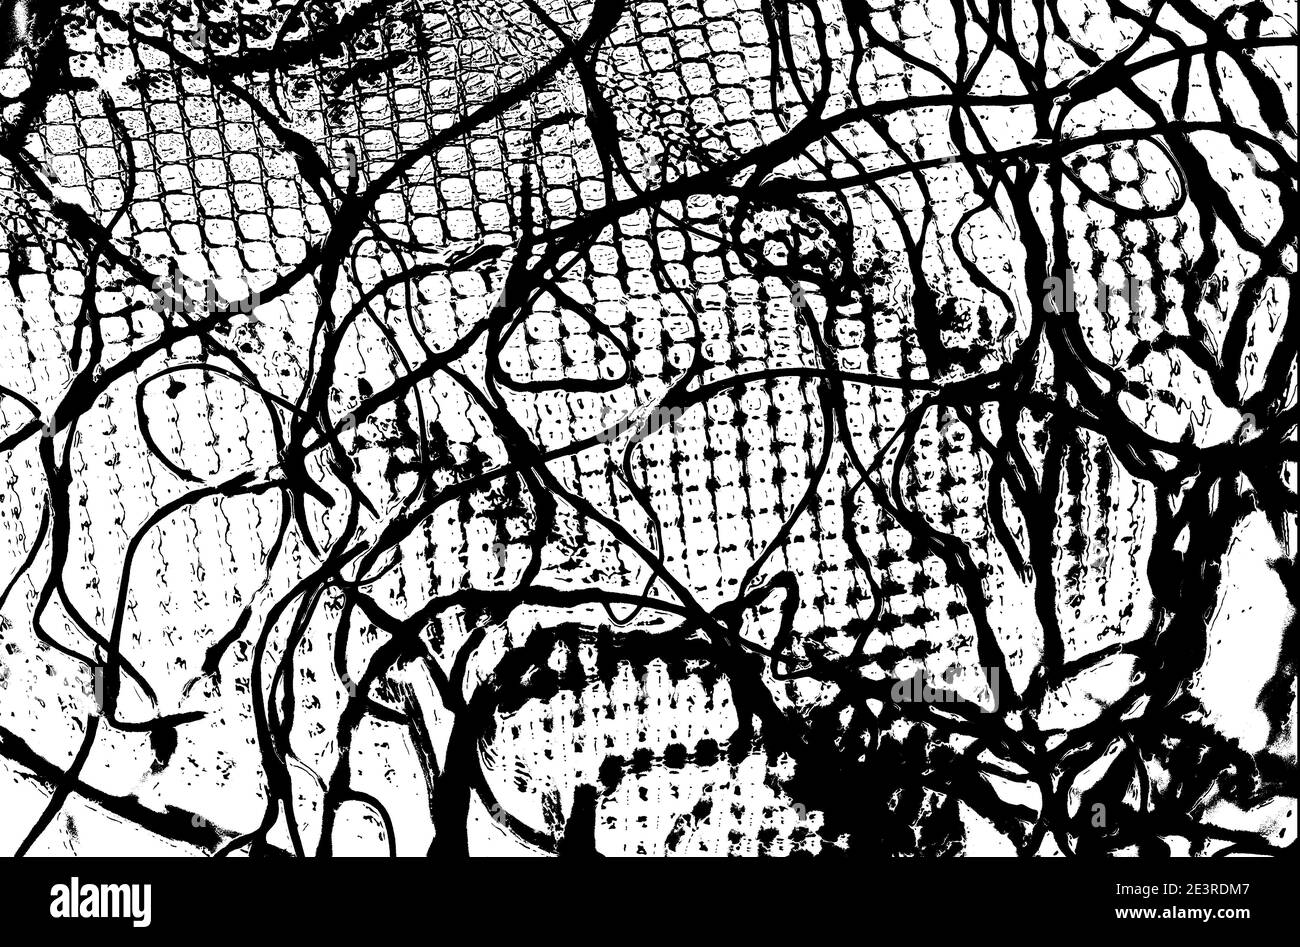 image abstraite monochrome graphique de filets de jardin Banque D'Images